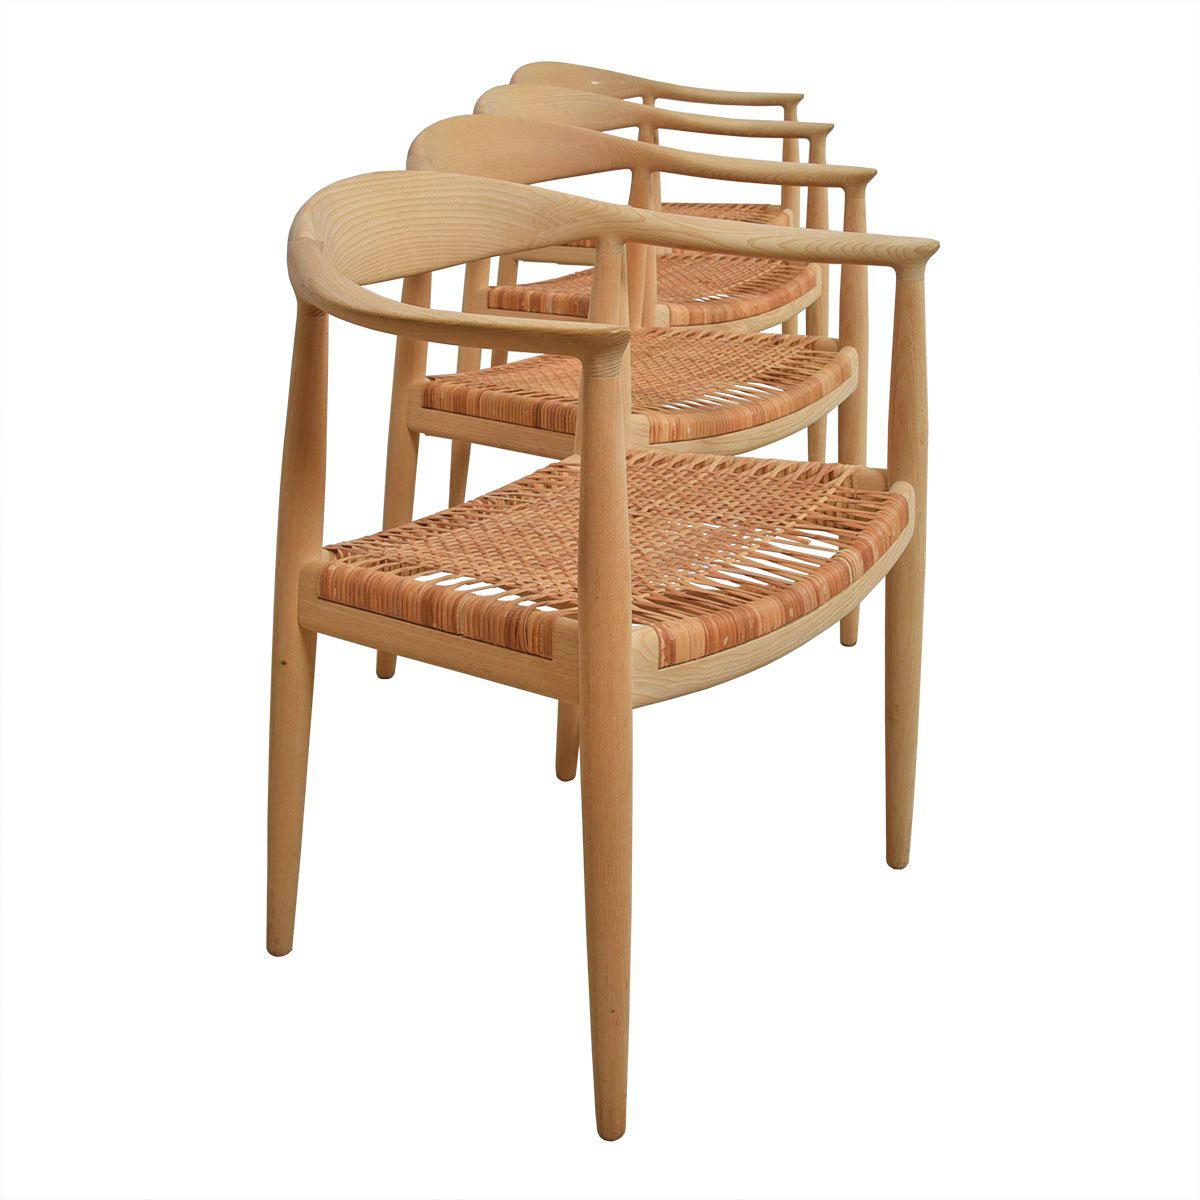 Ensemble de 8 chaises The Chair de Hans Wegner pour PP Mobler

Informations complémentaires :
La chaise PP503, conçue par Hans Wegner, est considérée comme l'un des modèles typiquement danois qui ont défini le mouvement moderniste du milieu du